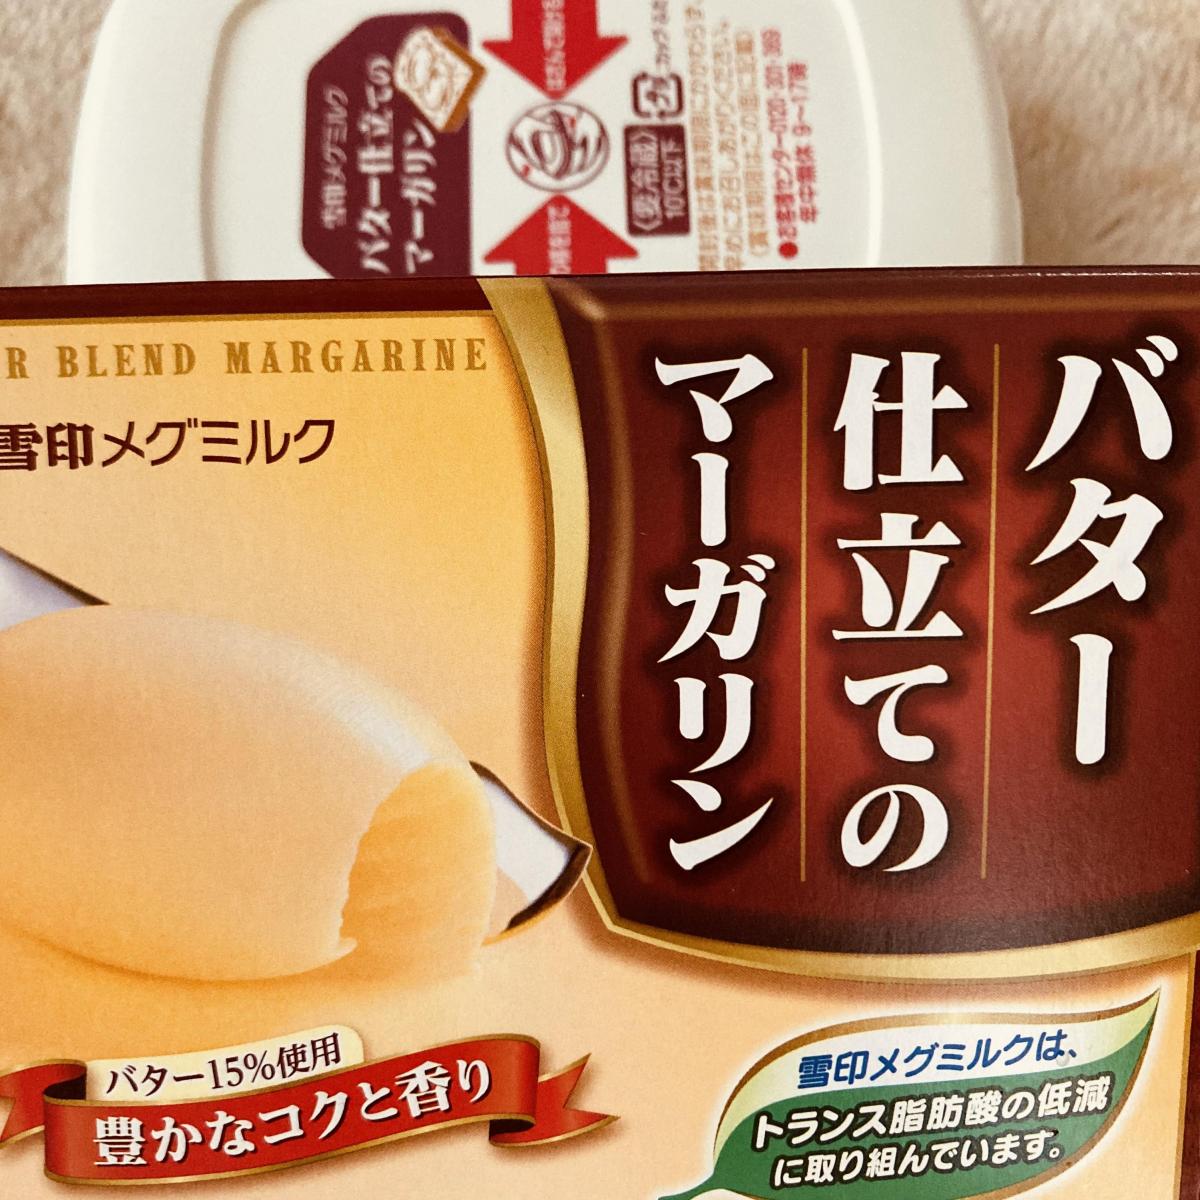 雪印メグミルク バター仕立てのマーガリンの商品ページ